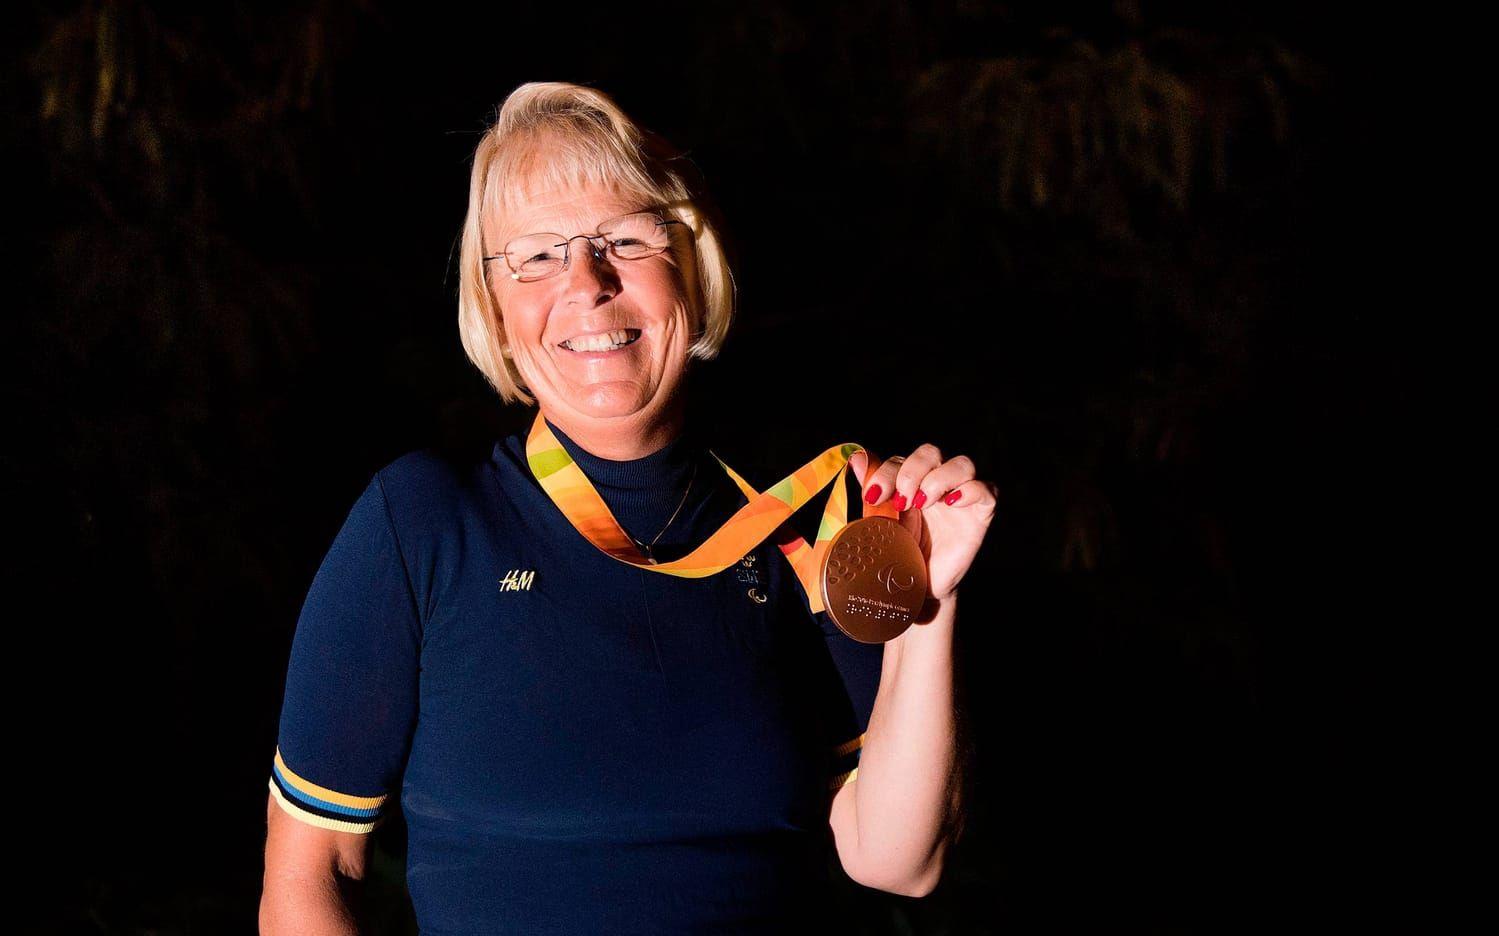 Louise Etzner, paradressyr. Tog två brons i Rio.Bild: Bildbyrån